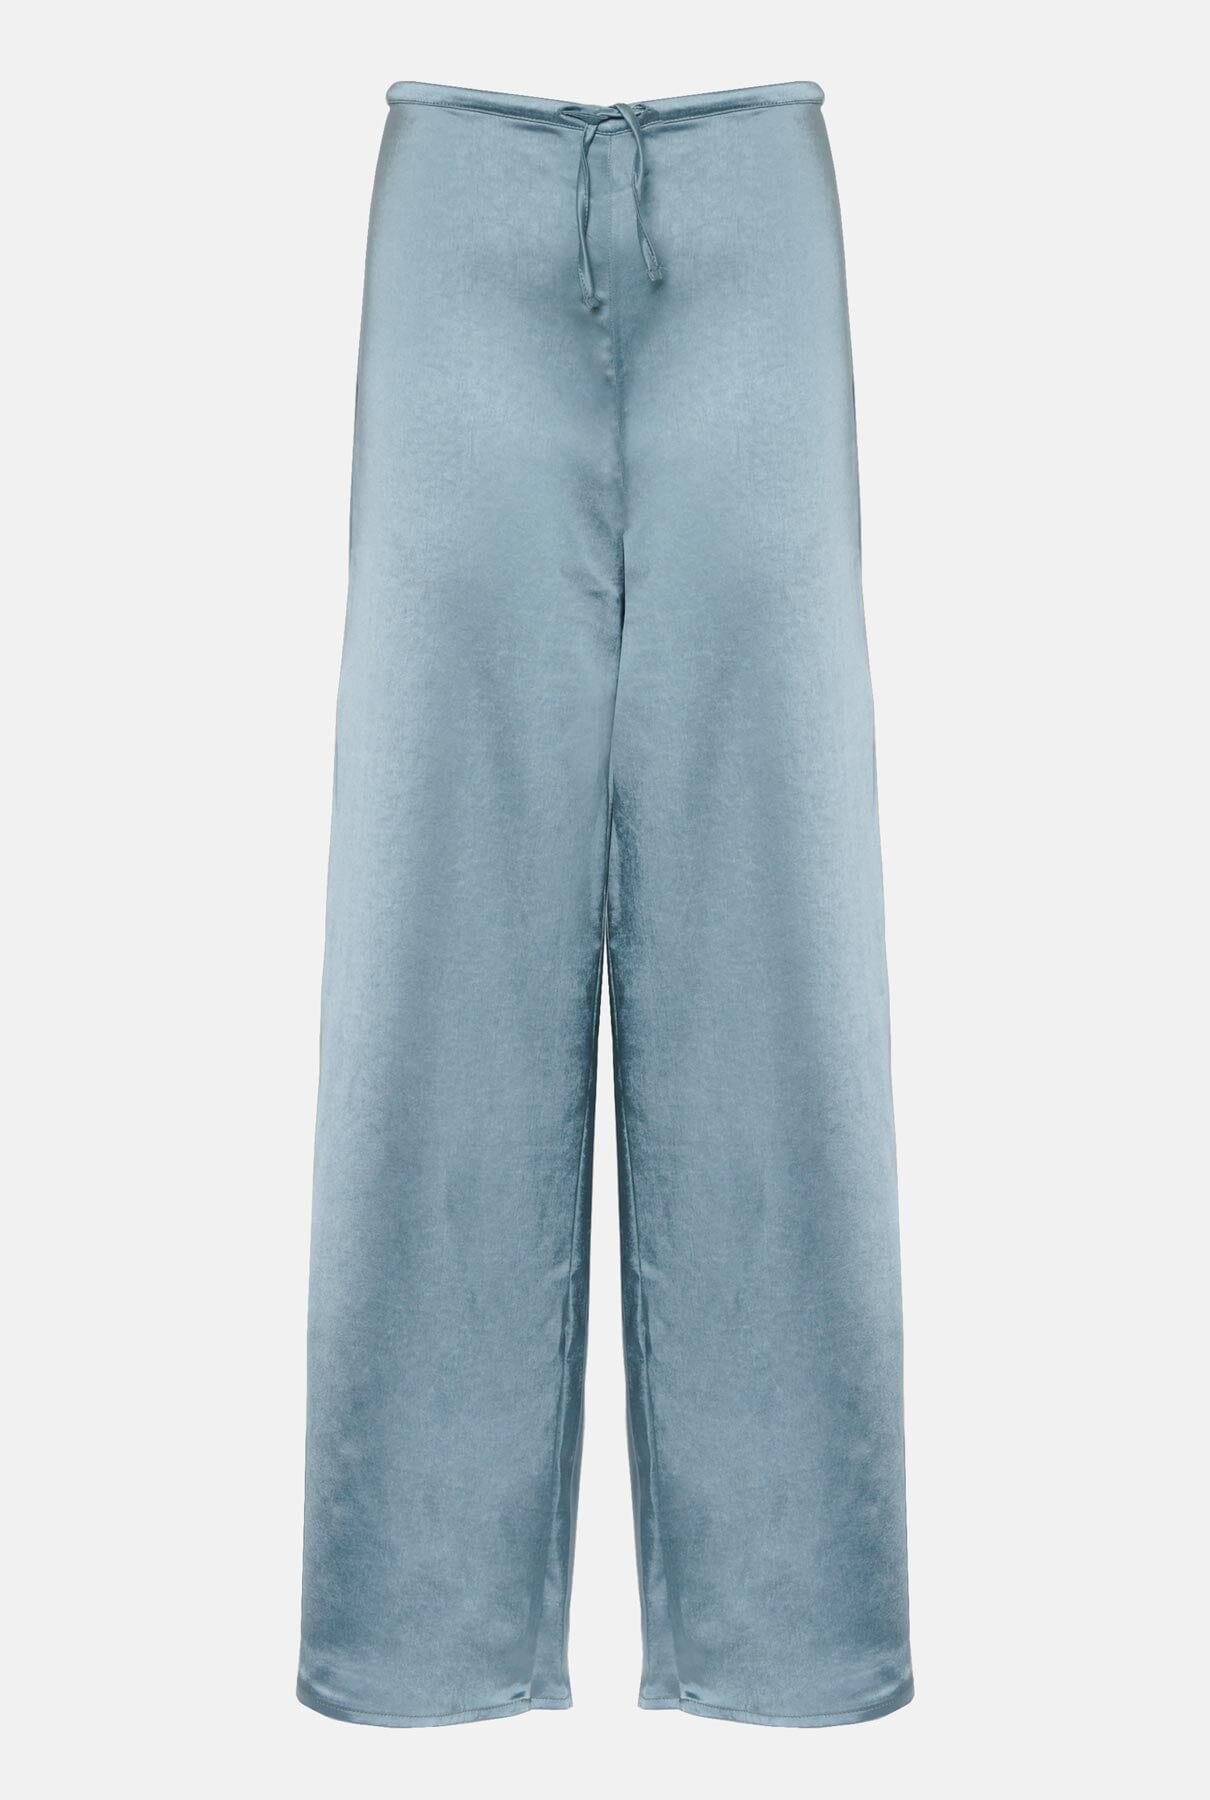 SATIN PANTS PETROLEUM BLUE Trousers The Villã Concept 